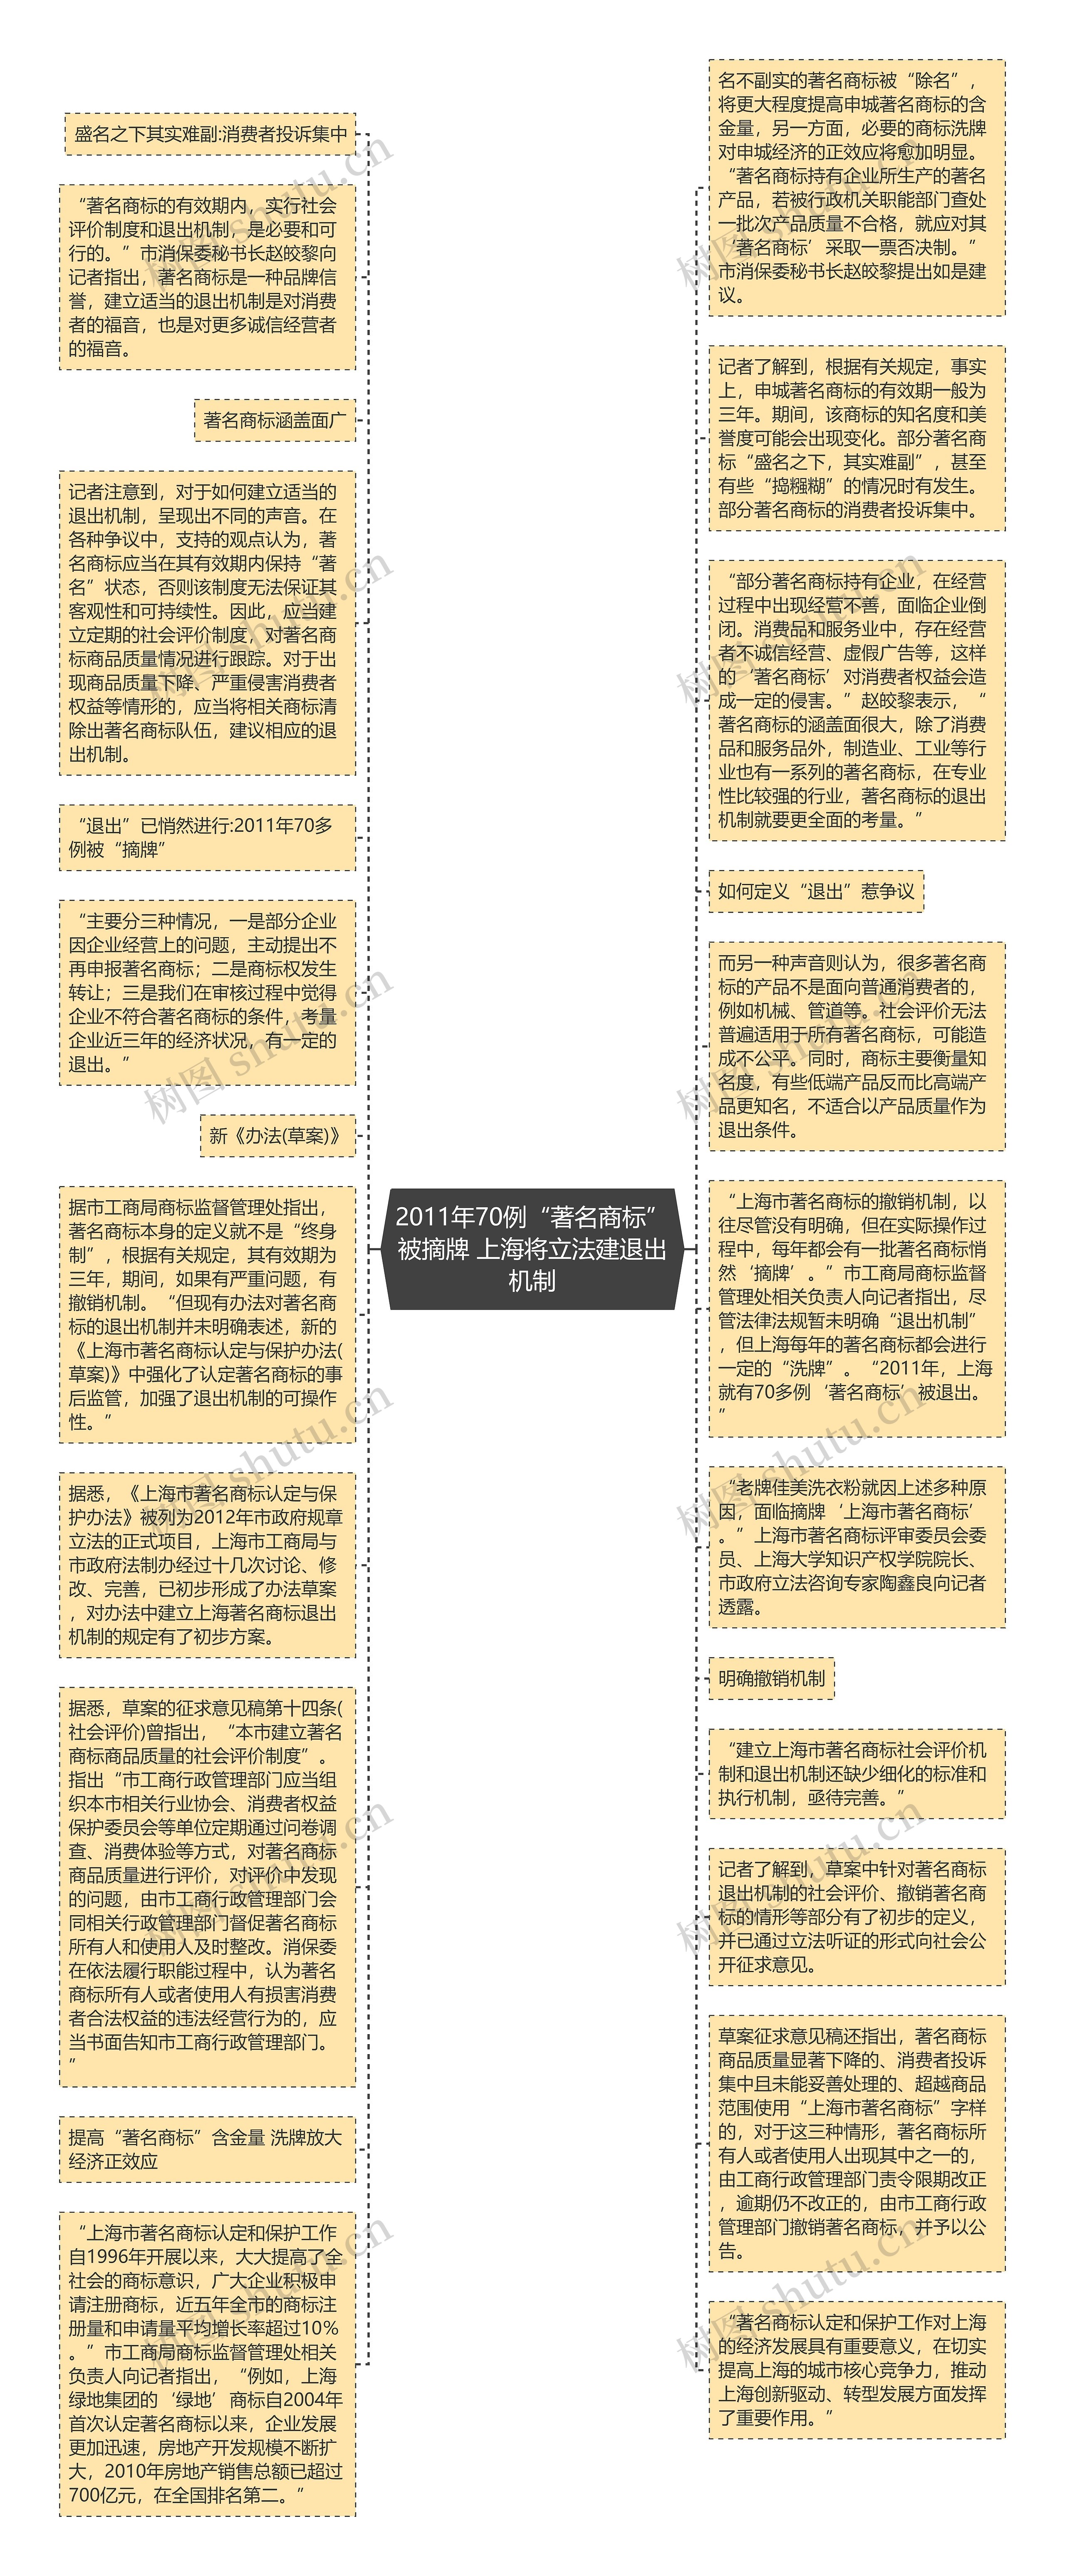 2011年70例“著名商标”被摘牌 上海将立法建退出机制